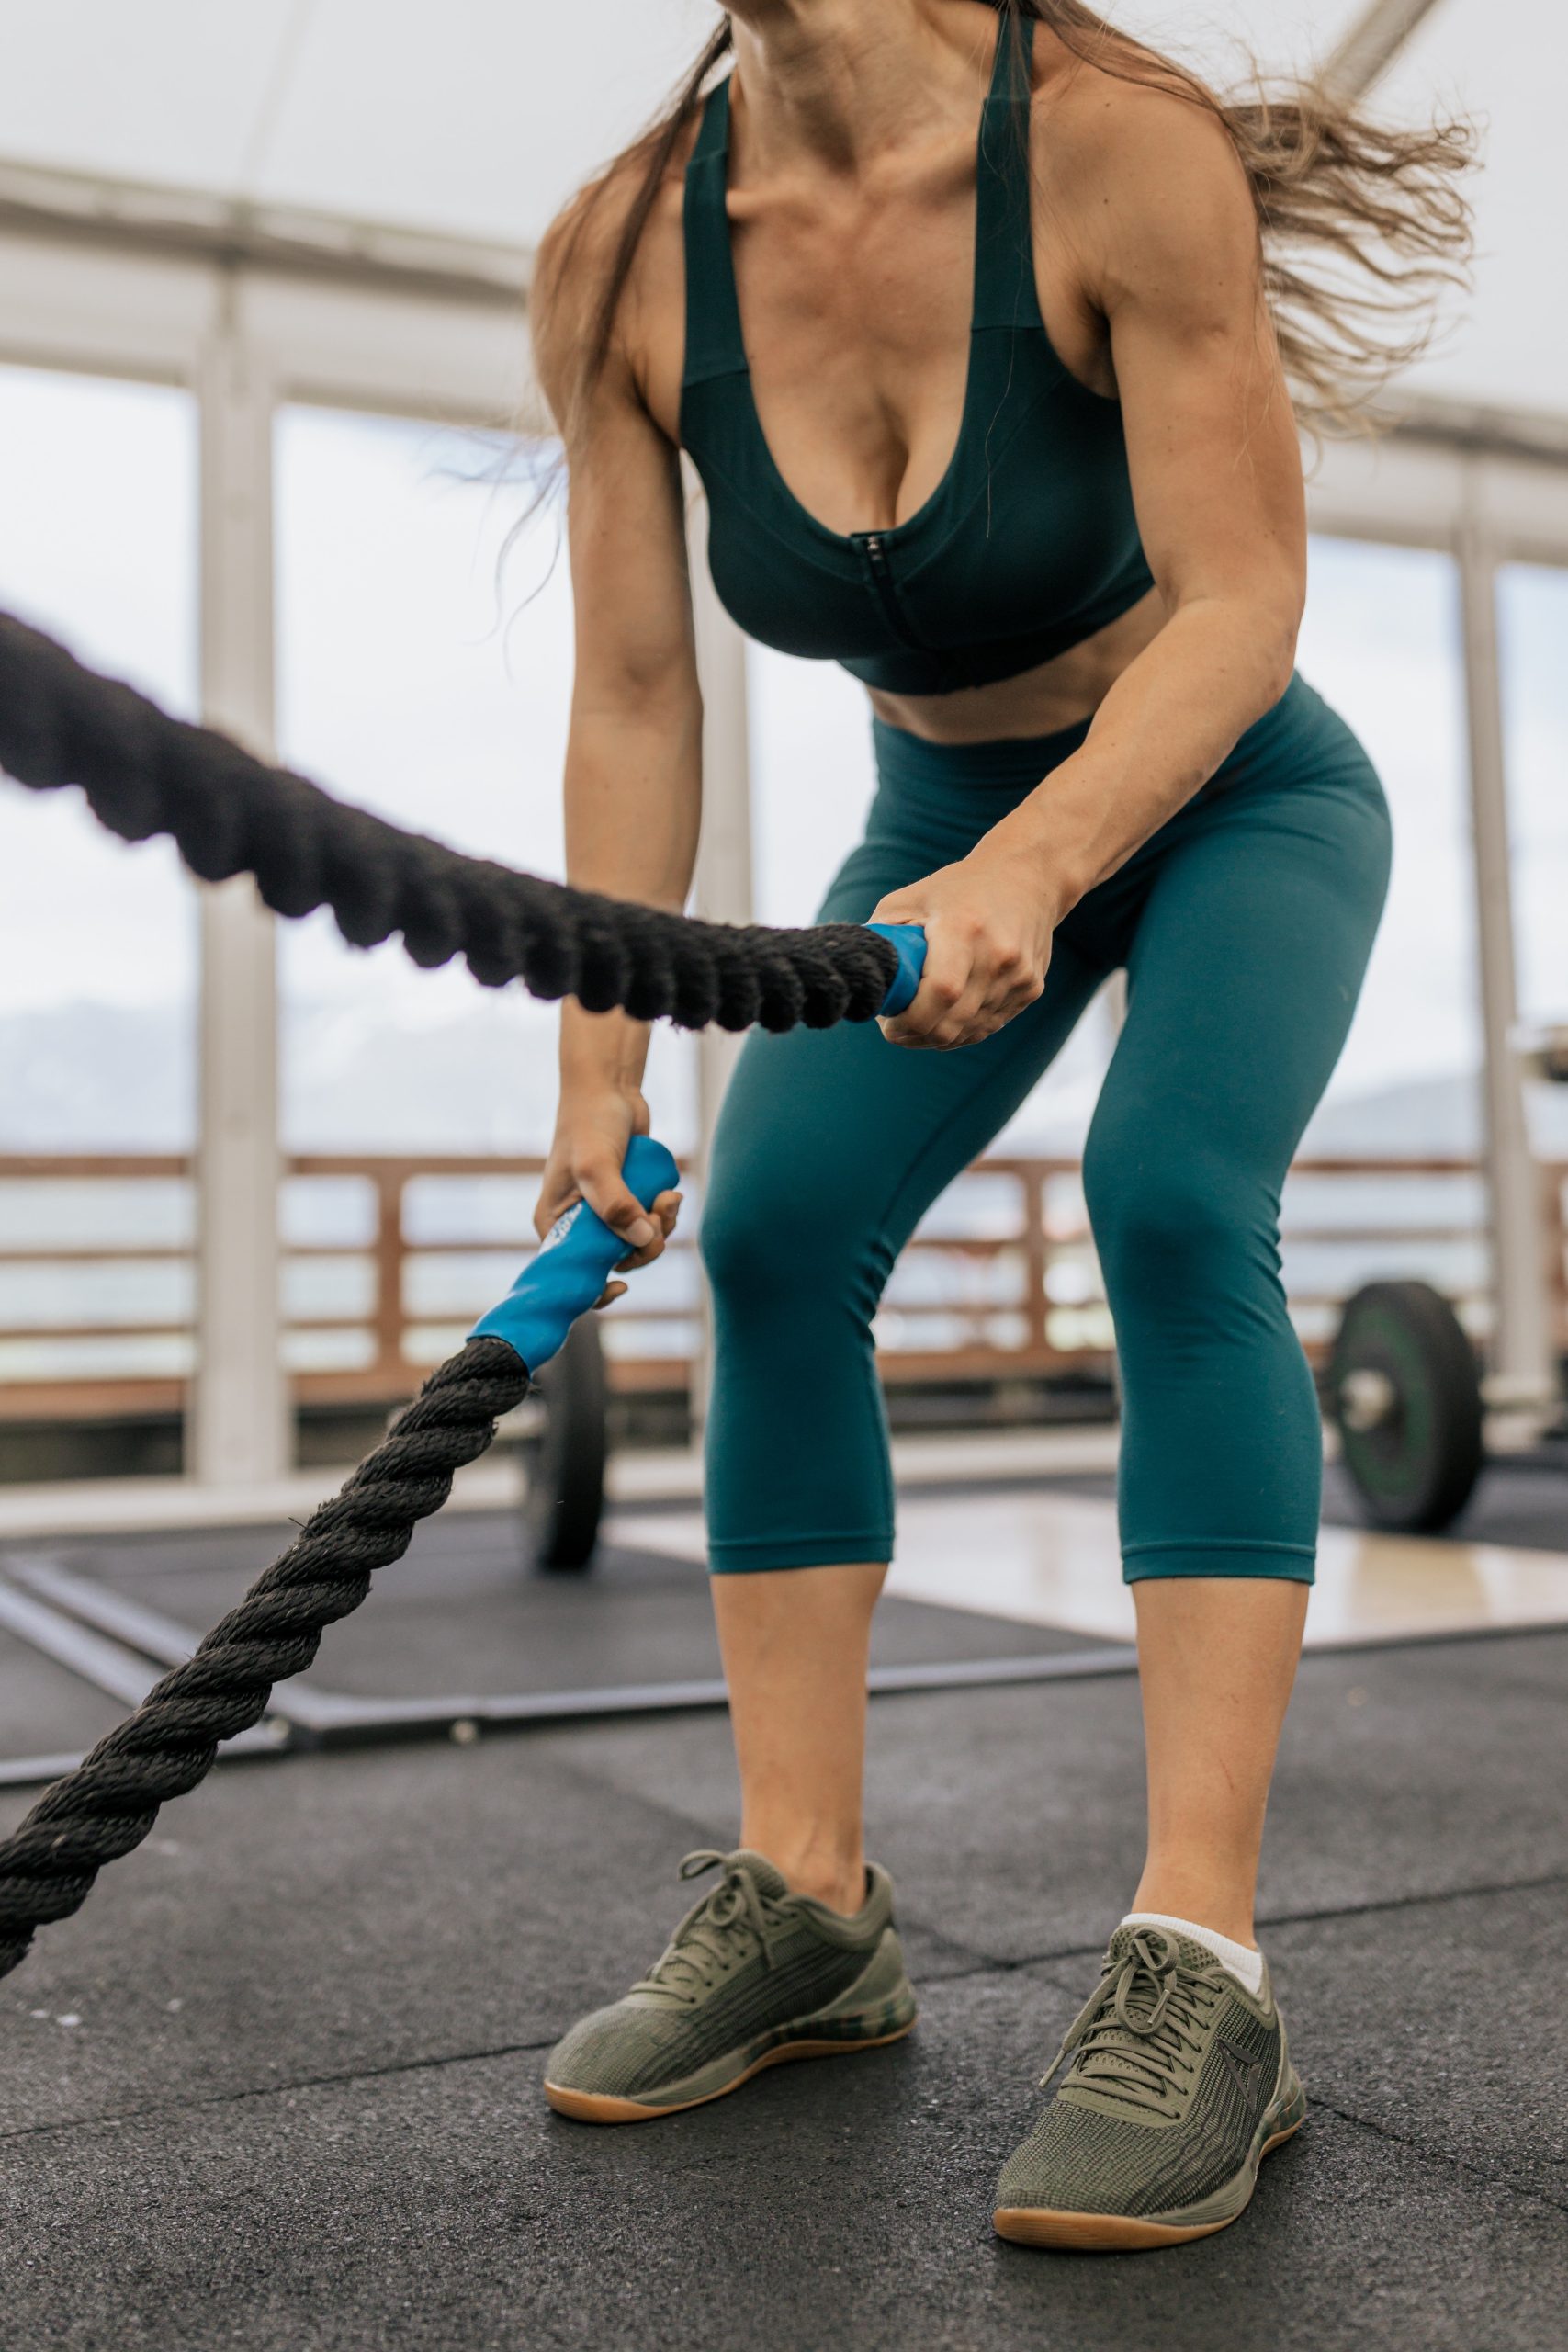 Femme sportive qui fait du renforcement musculaire pour améliorer sa technique de course | Sporty woman doing weight training